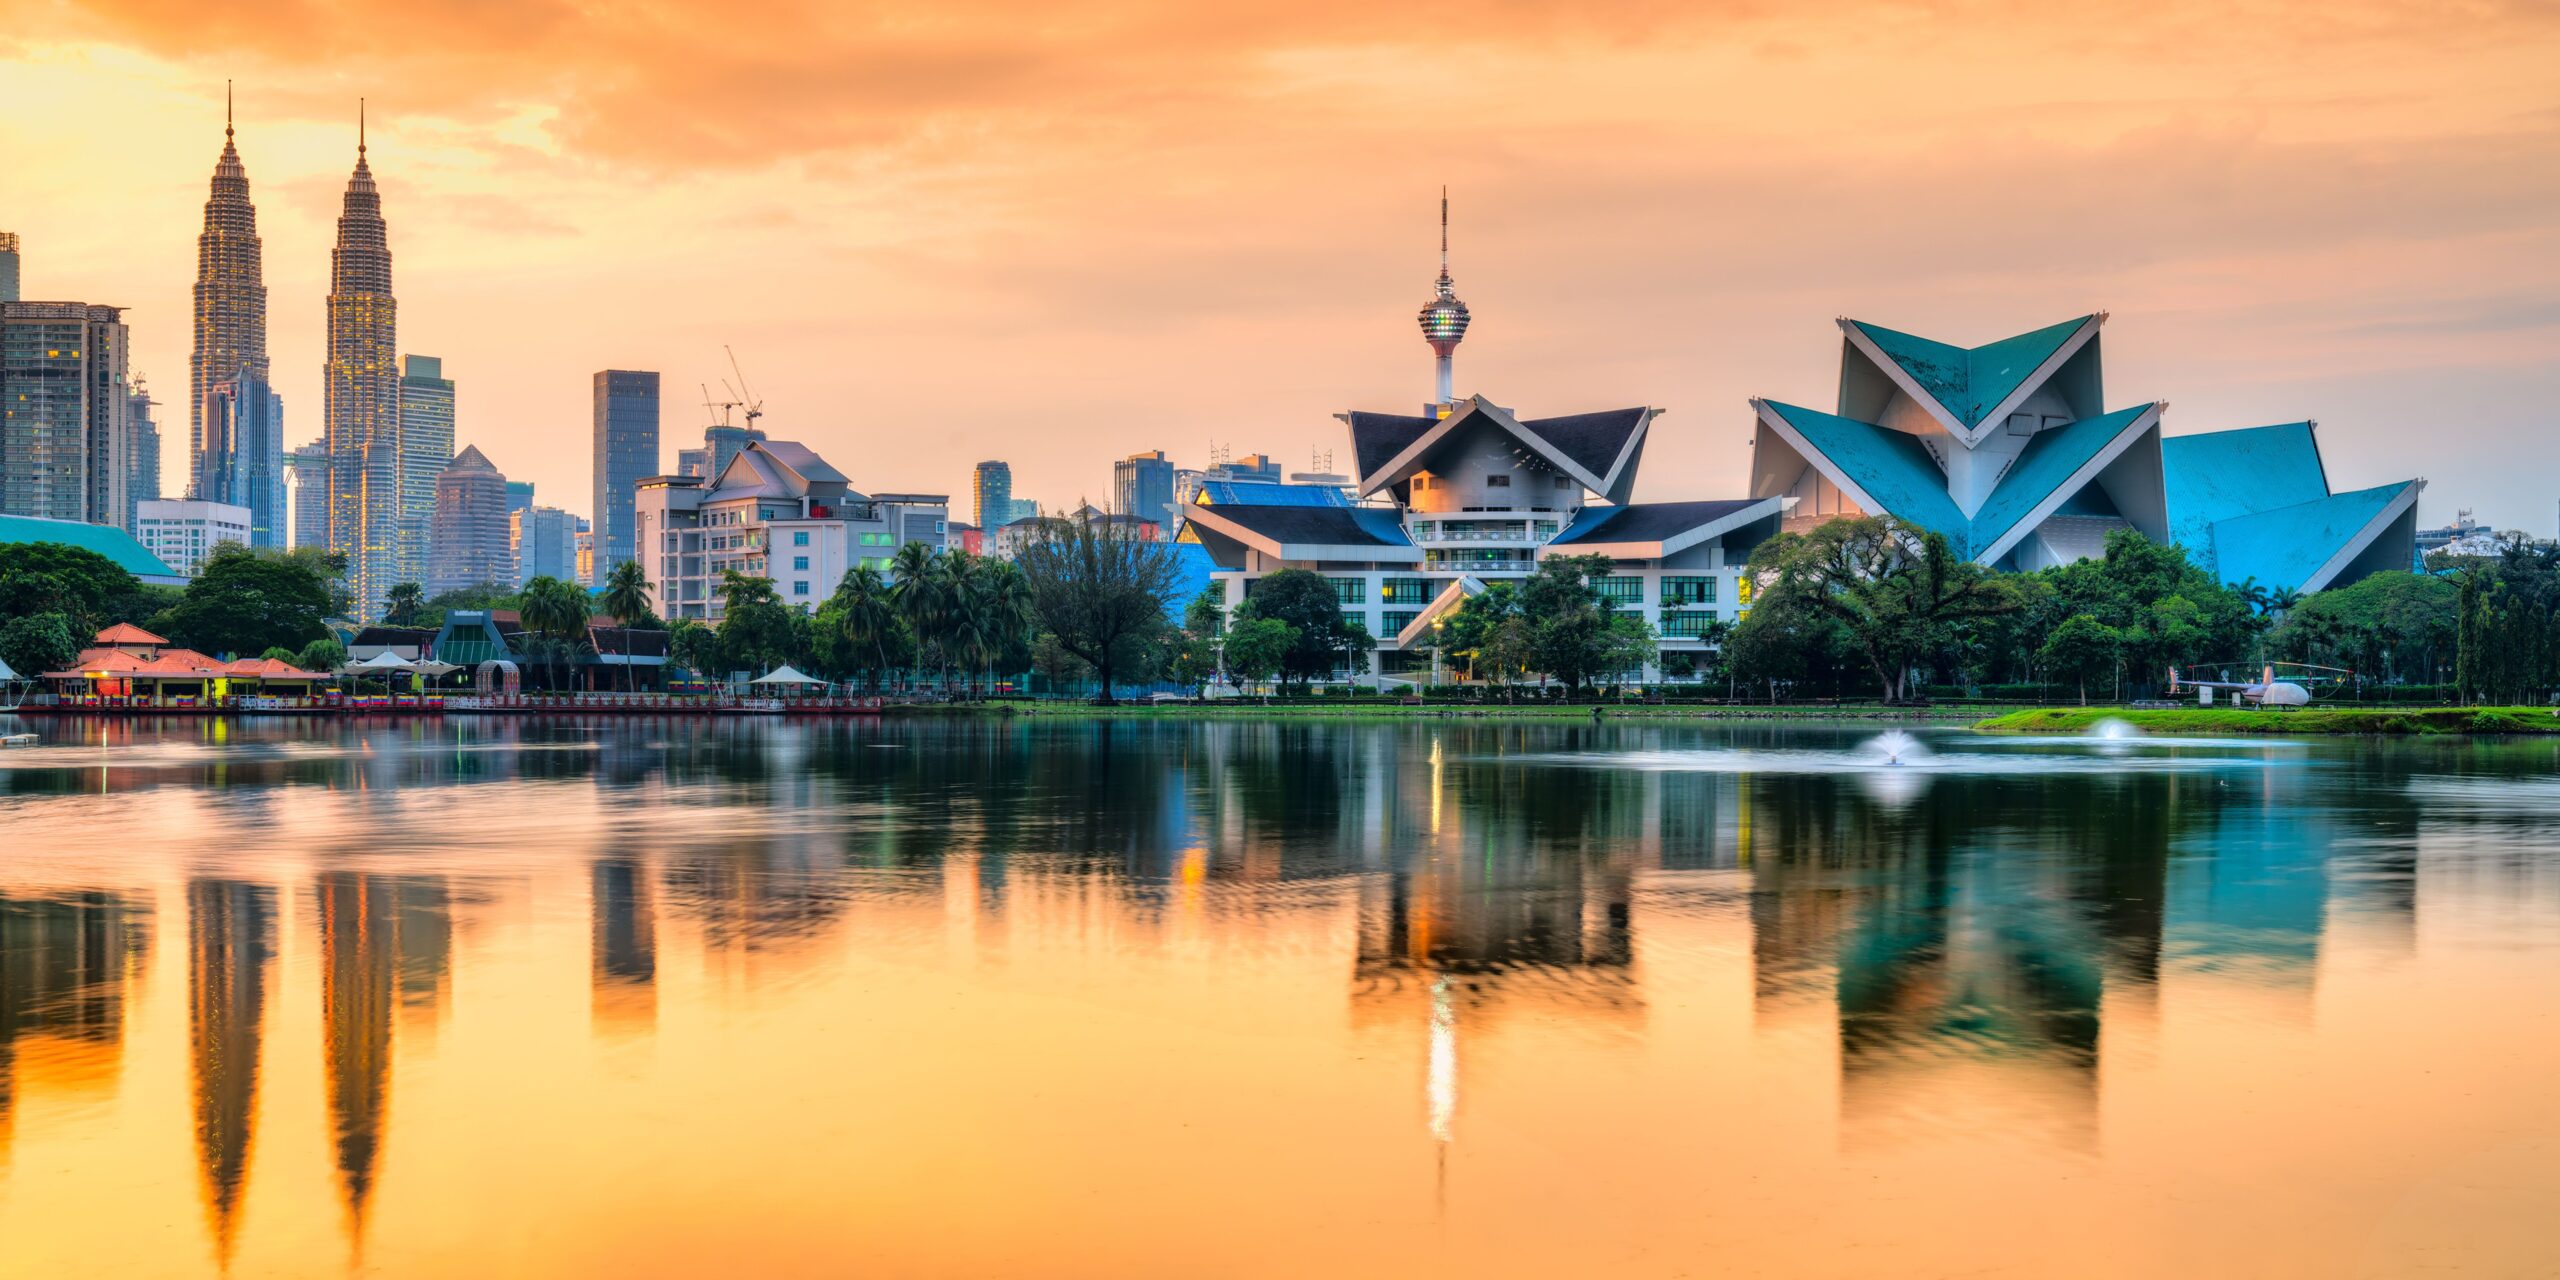 Les tours jumelles Petronas, un incontournable à faire à Kuala Lumpur